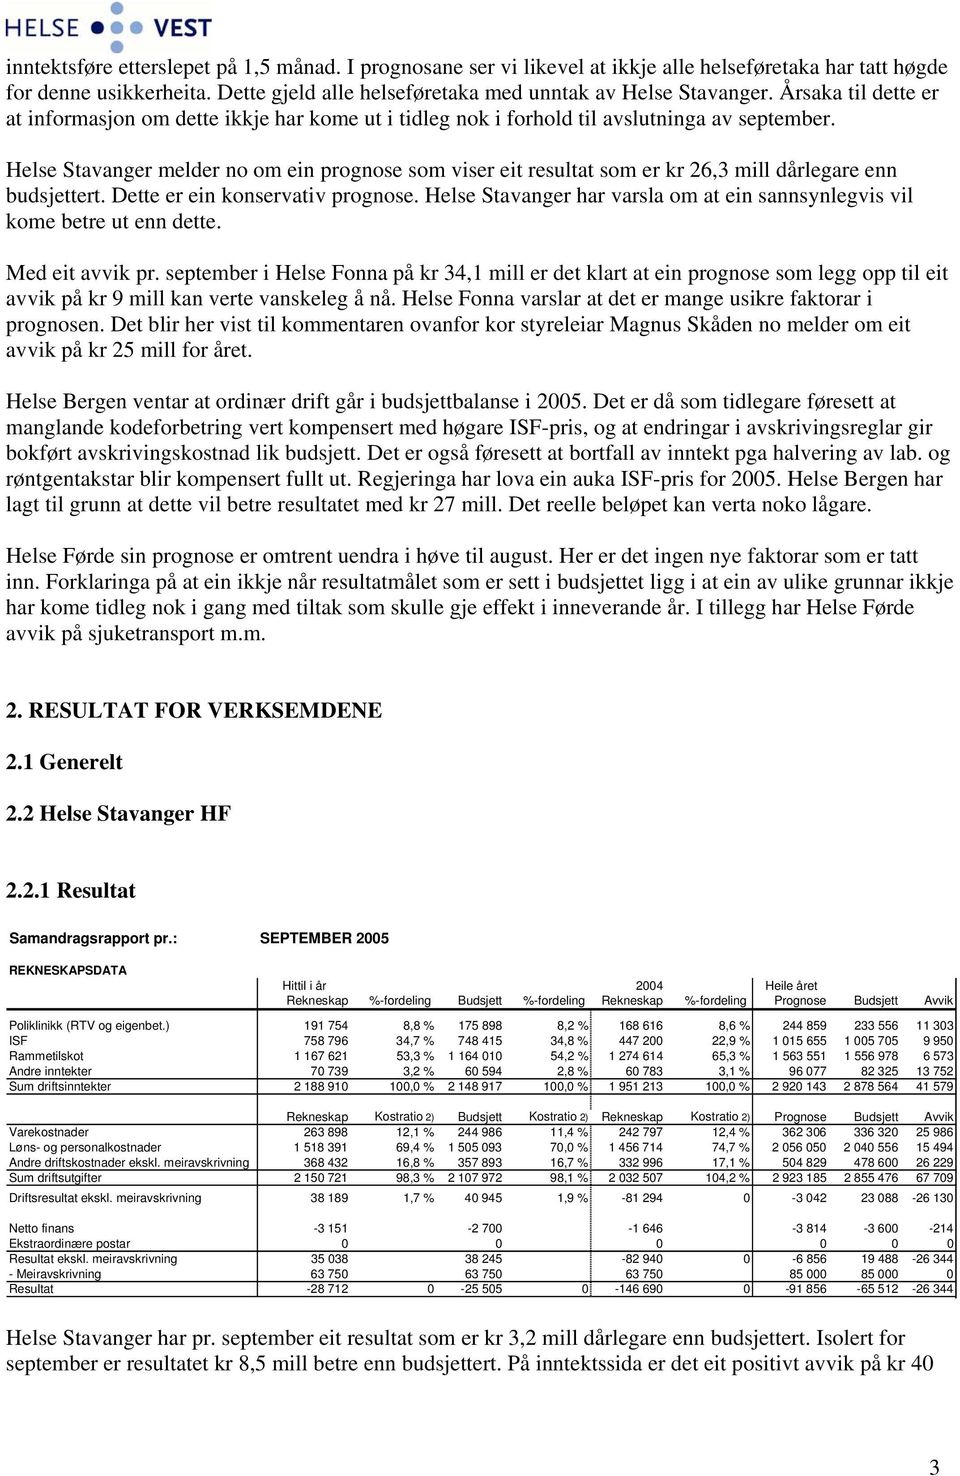 Helse Stavanger melder no om ein prognose som viser eit resultat som er kr 26,3 mill dårlegare enn budsjettert. Dette er ein konservativ prognose.